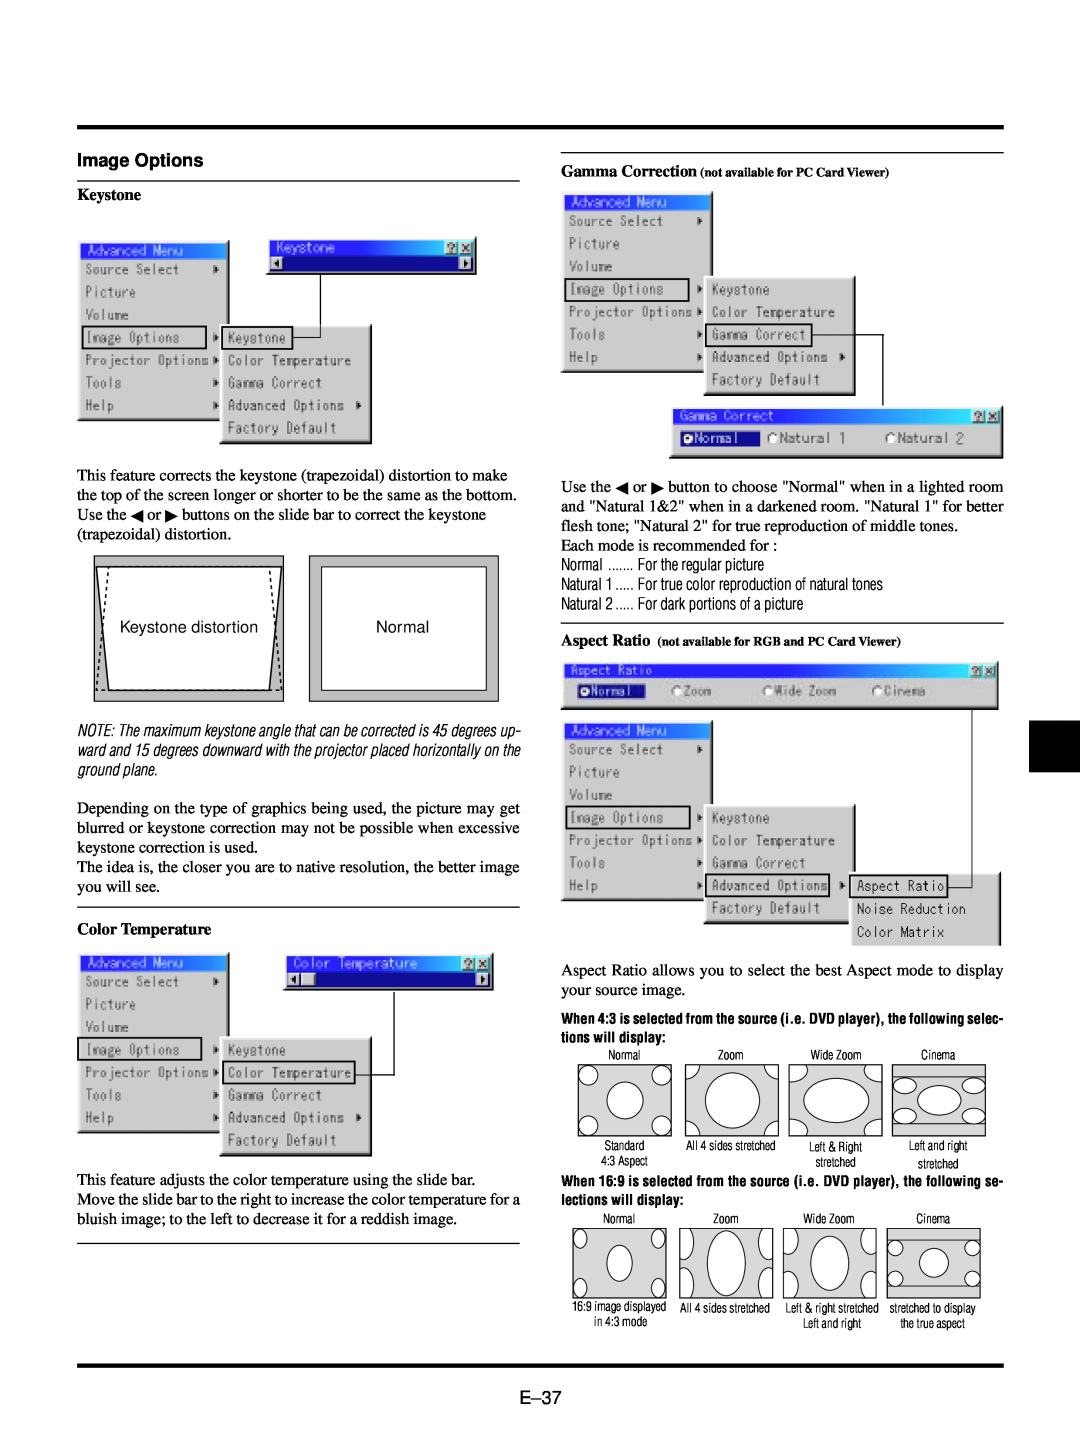 NEC LT150/LT85 user manual Image Options, E–37, Keystone, Color Temperature 